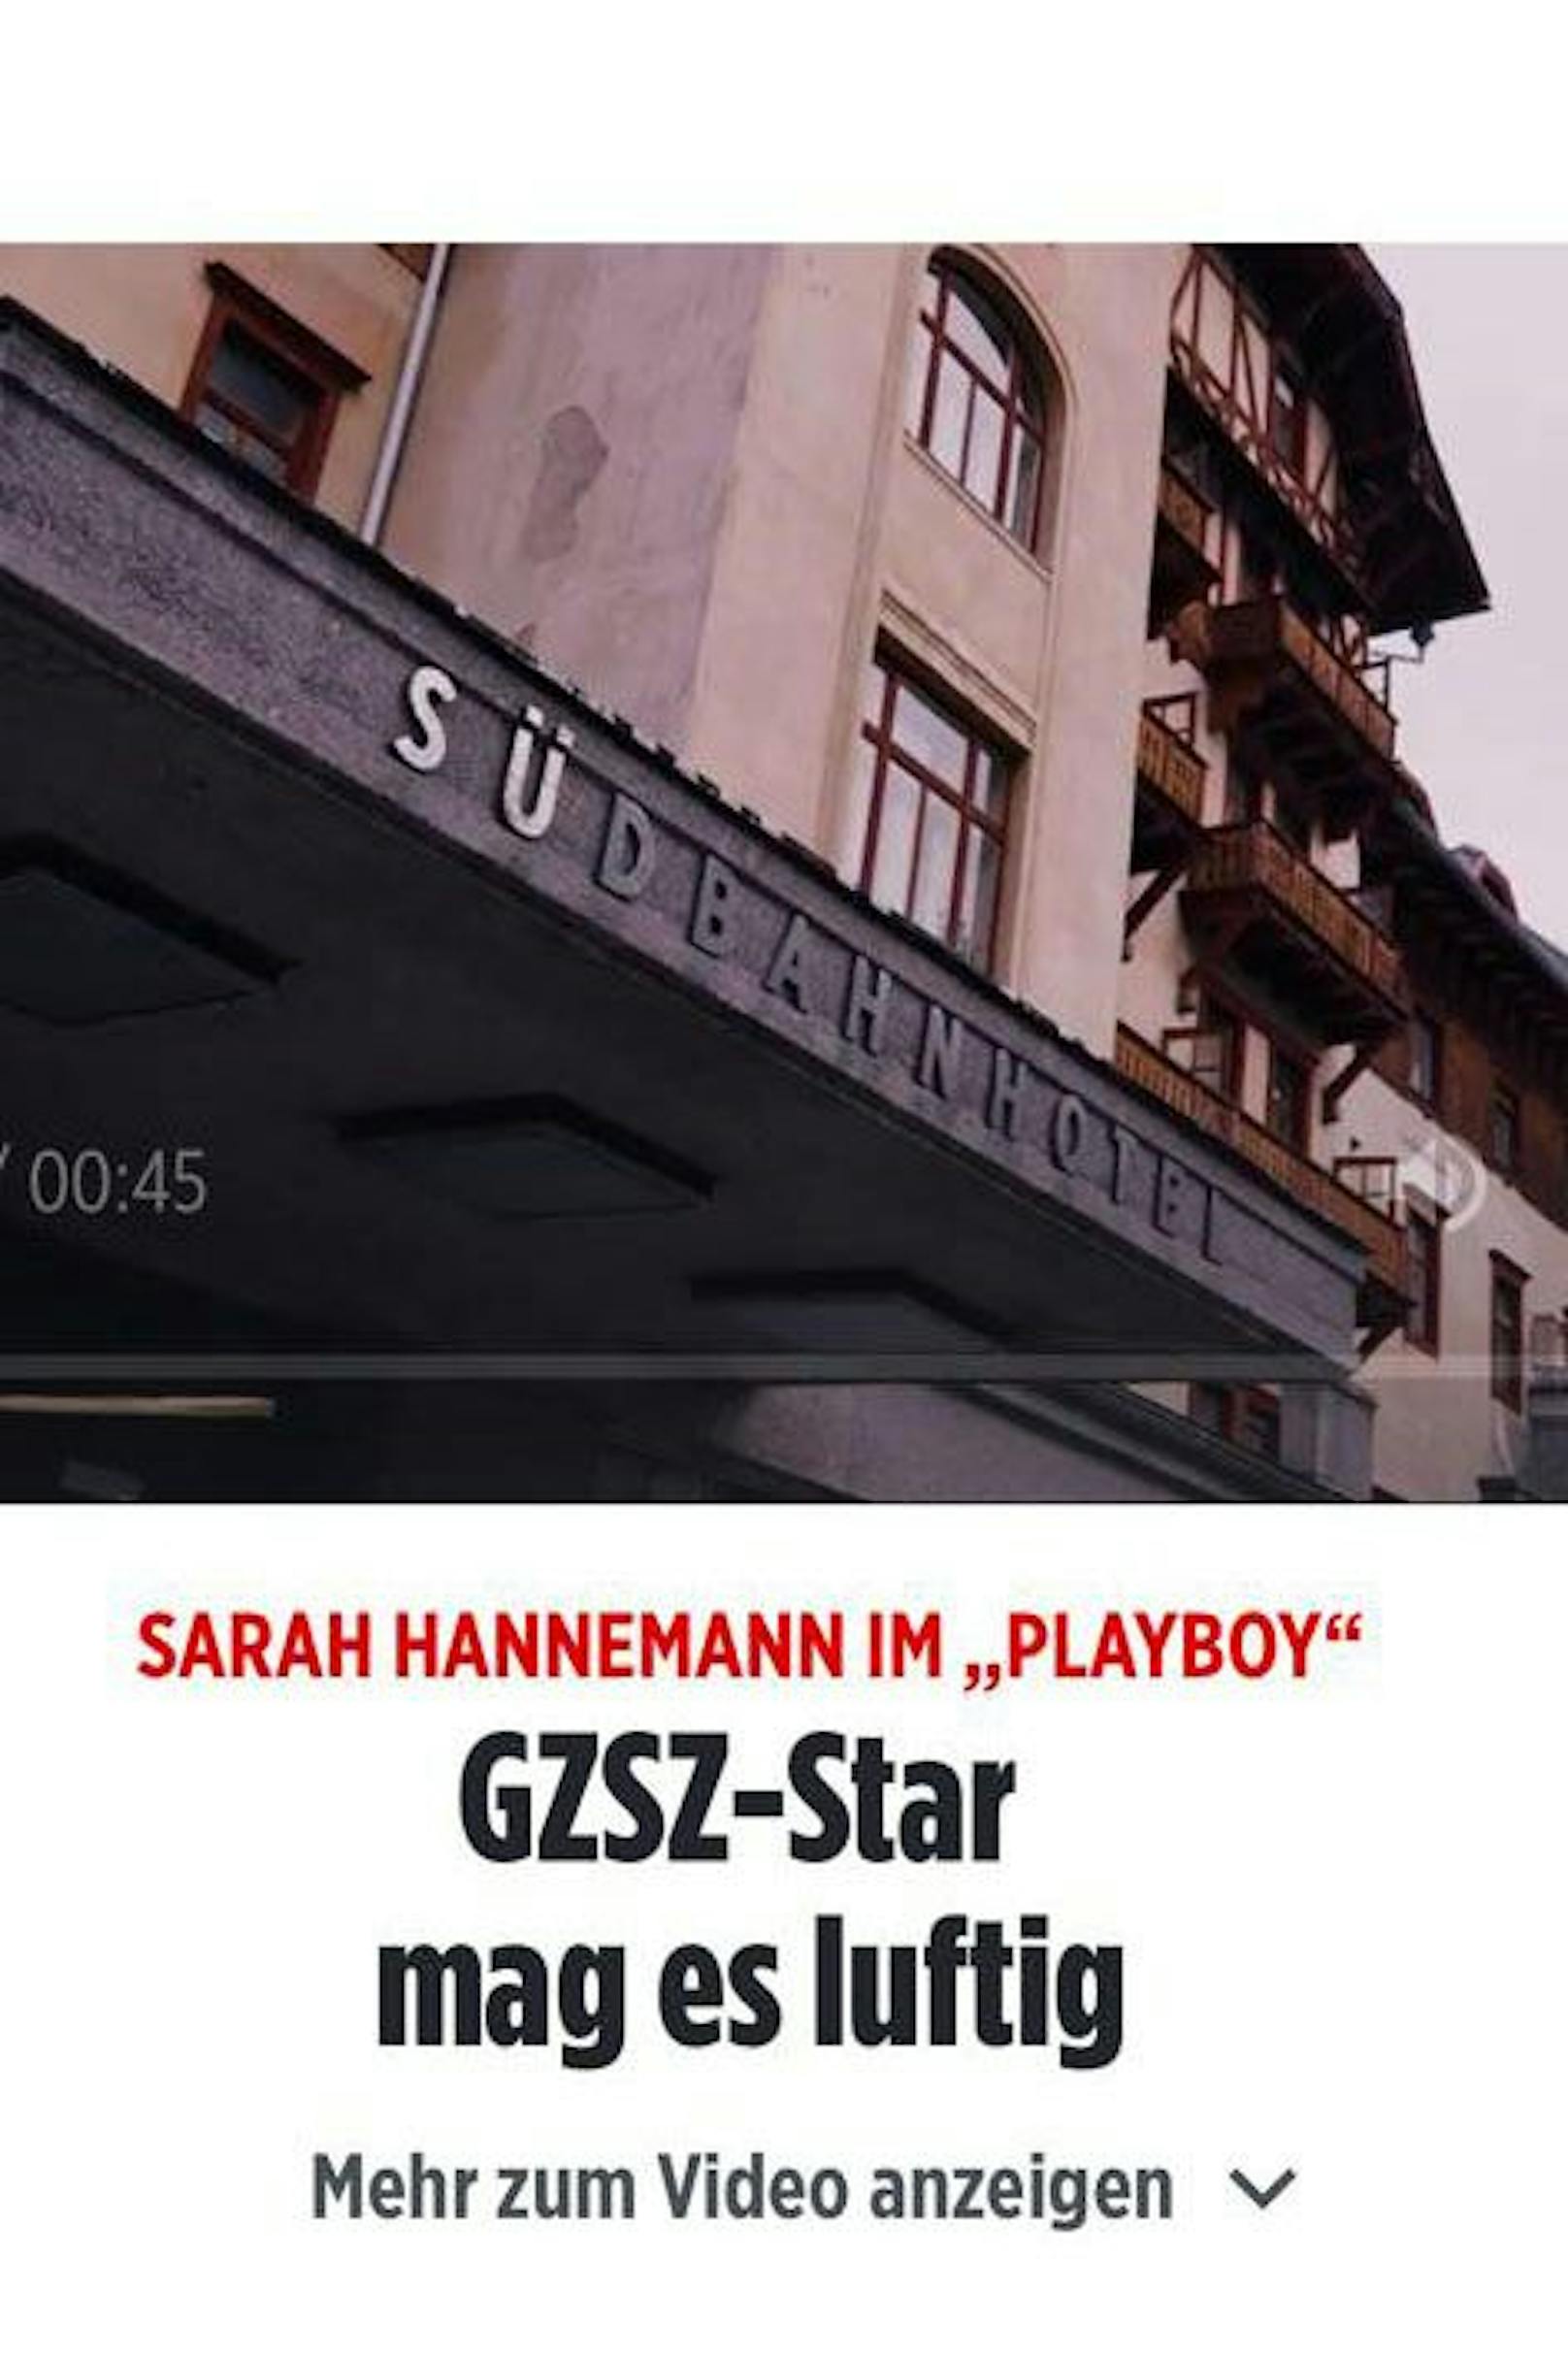 Nur: Zu sehen ist eindeutig das Südbahnhotel, welches nur fast in Wien liegt, aber wenn wir genau sind, liegt das Südbahnhotel am Semmering.